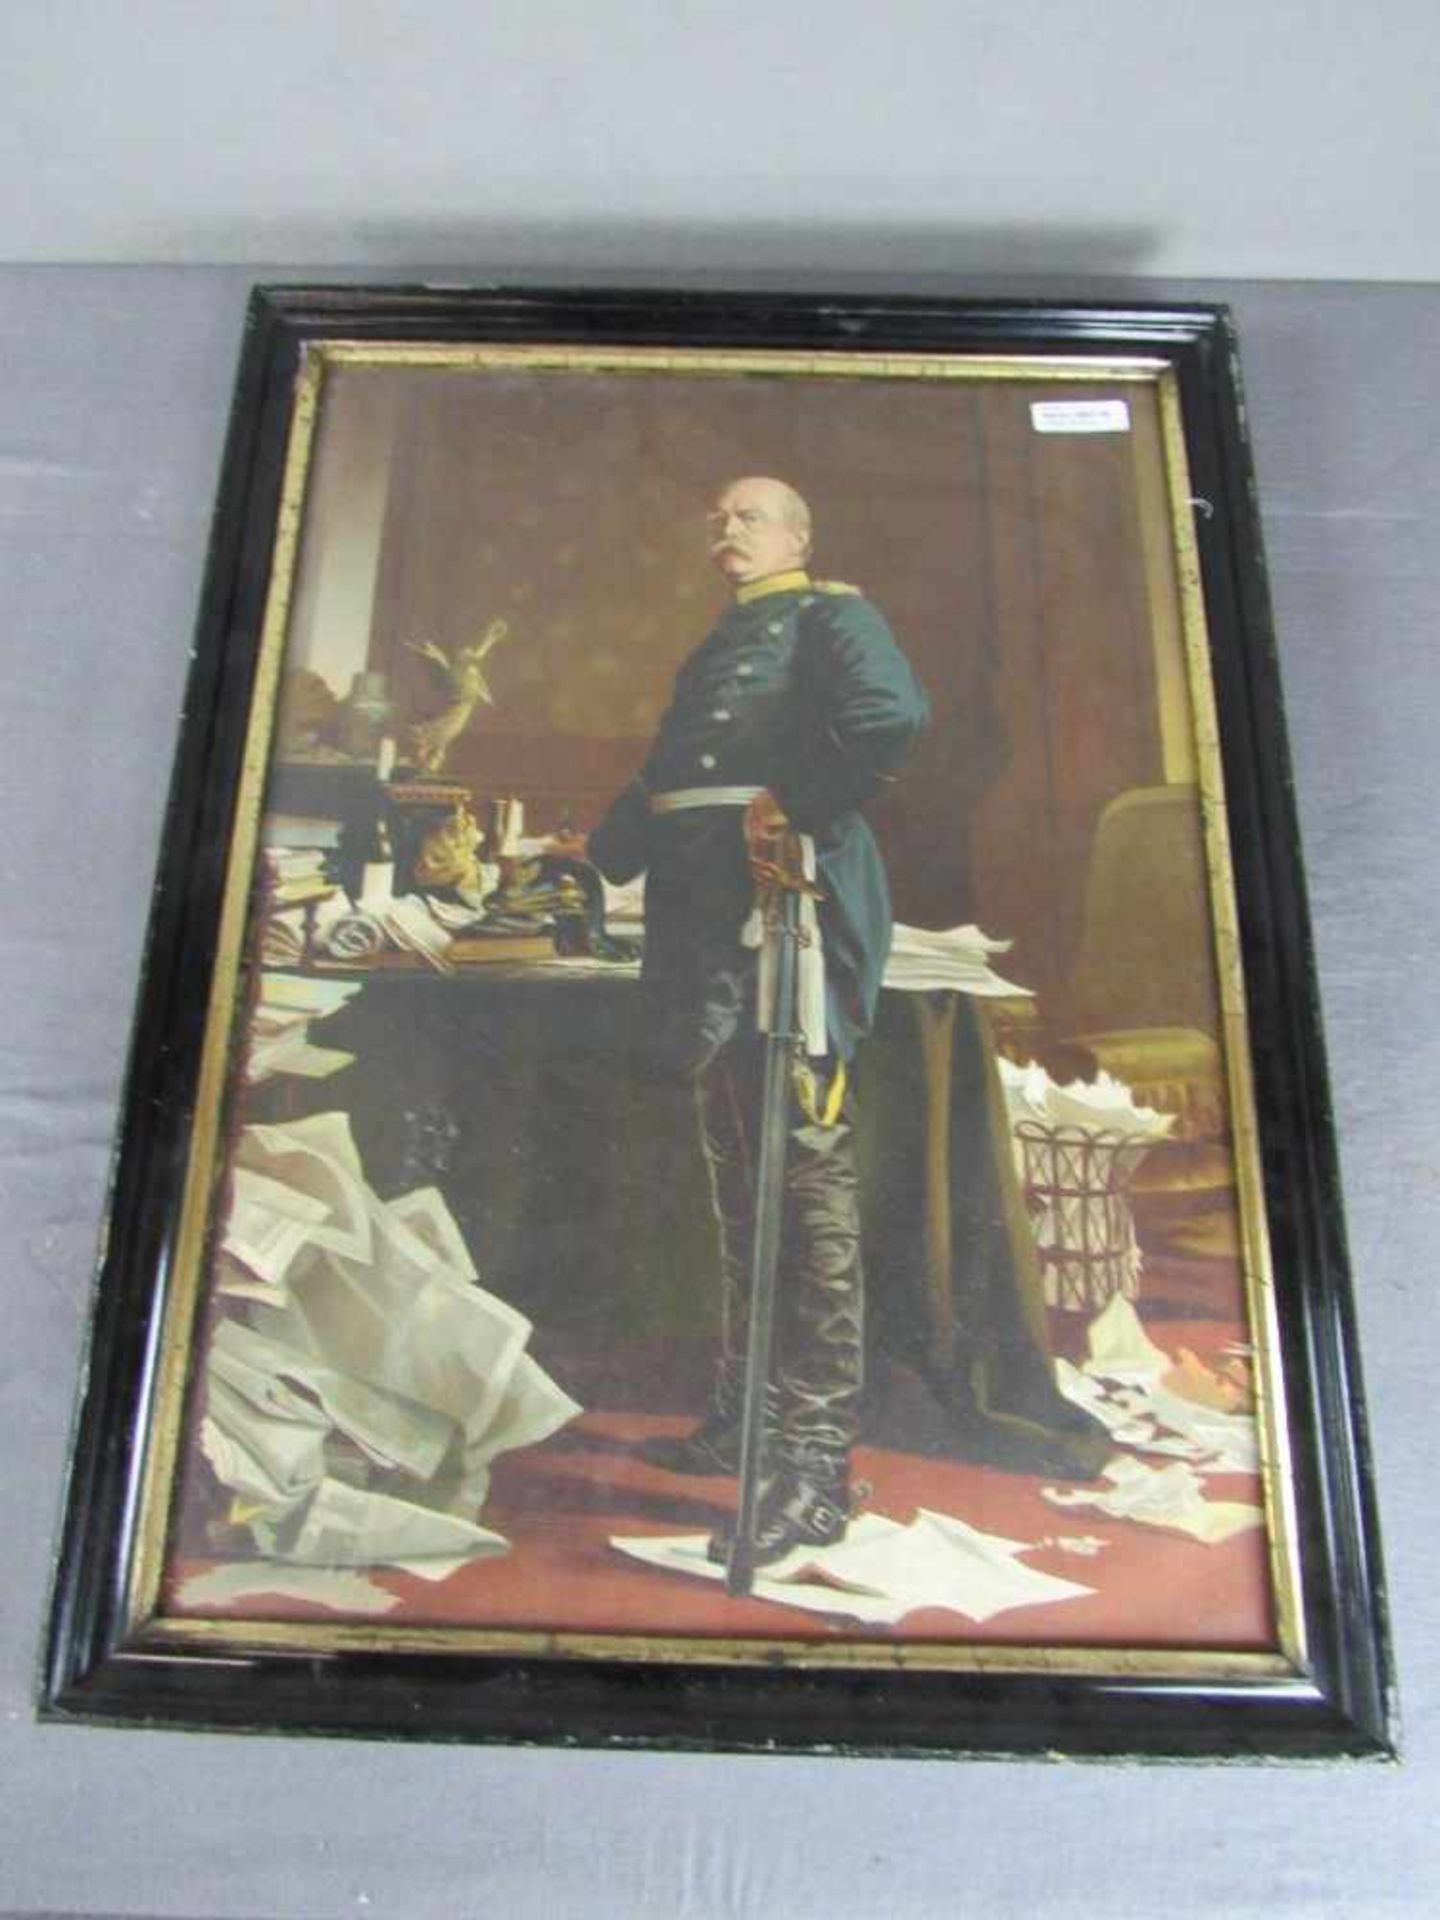 Militärisches Bild Kunstdruck Darstellung Bismarck unten rechts monogrammiert AVW. 1879 70x53cm - Bild 3 aus 4